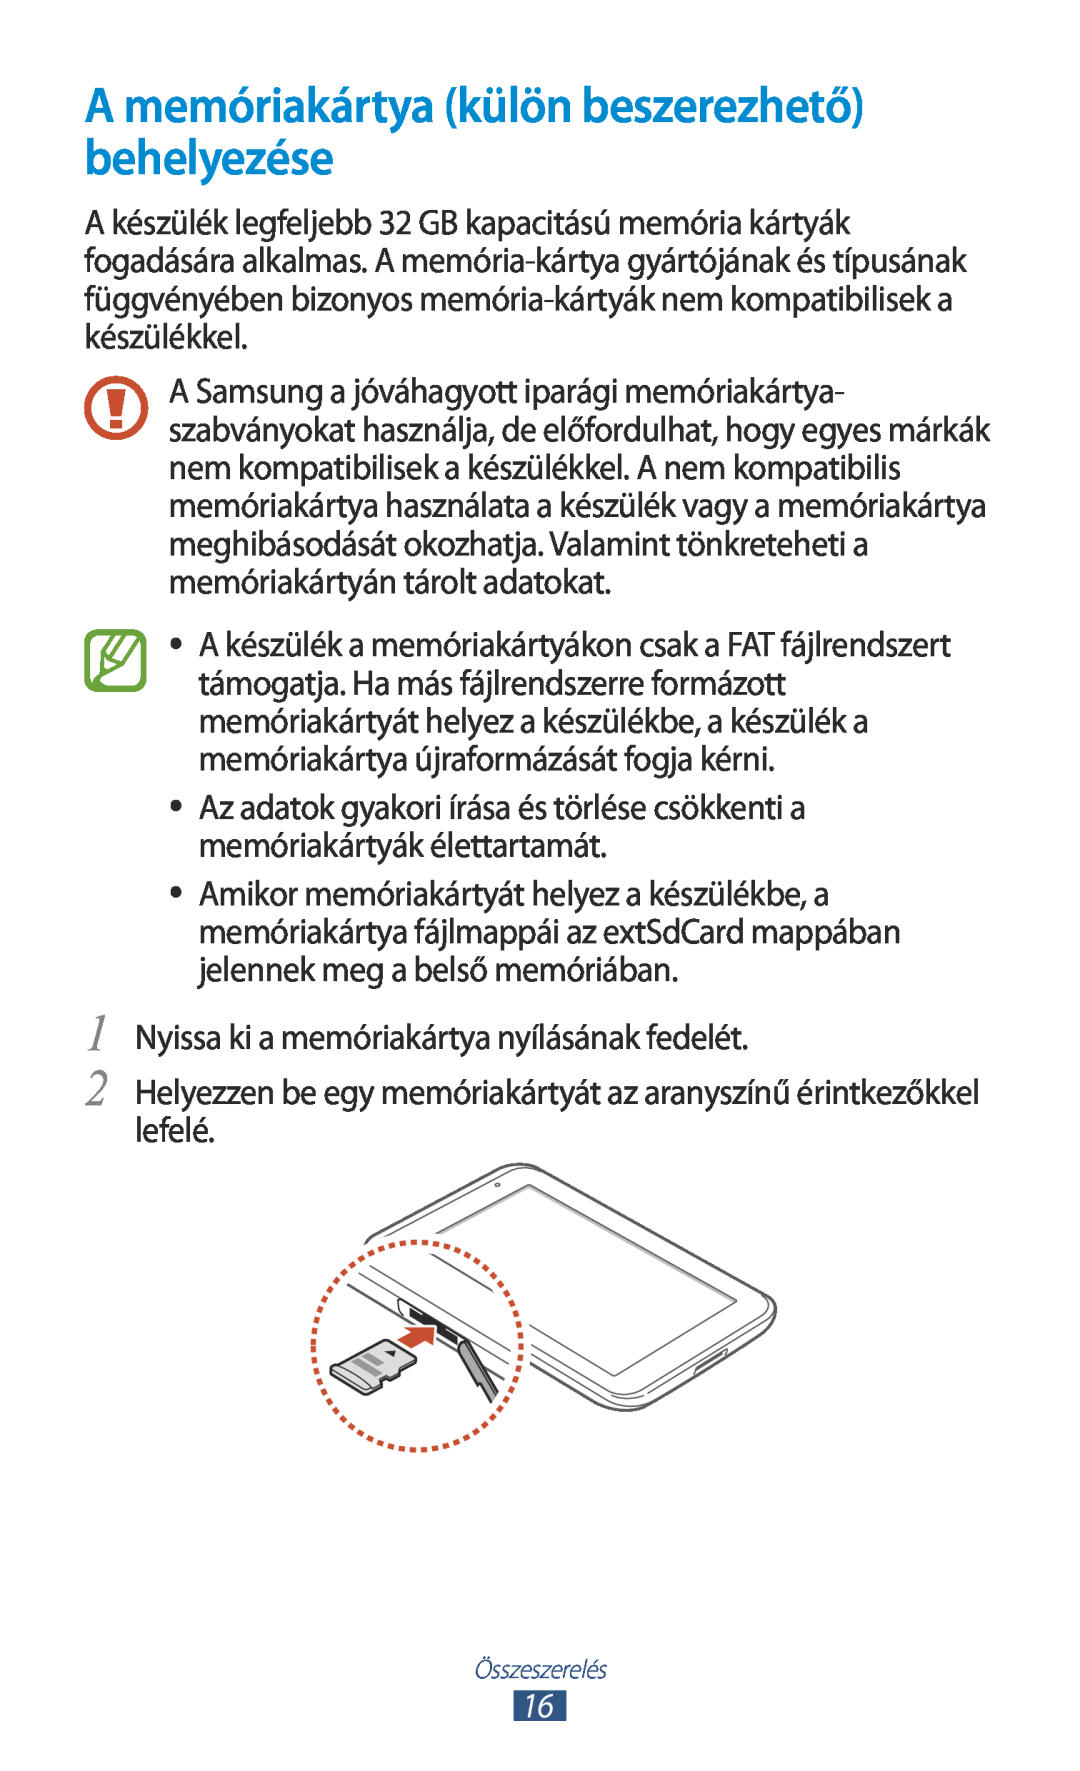 Samsung GT-P3110GRAXEH manual A memóriakártya külön beszerezhető behelyezése, Nyissa ki a memóriakártya nyílásának fedelét 